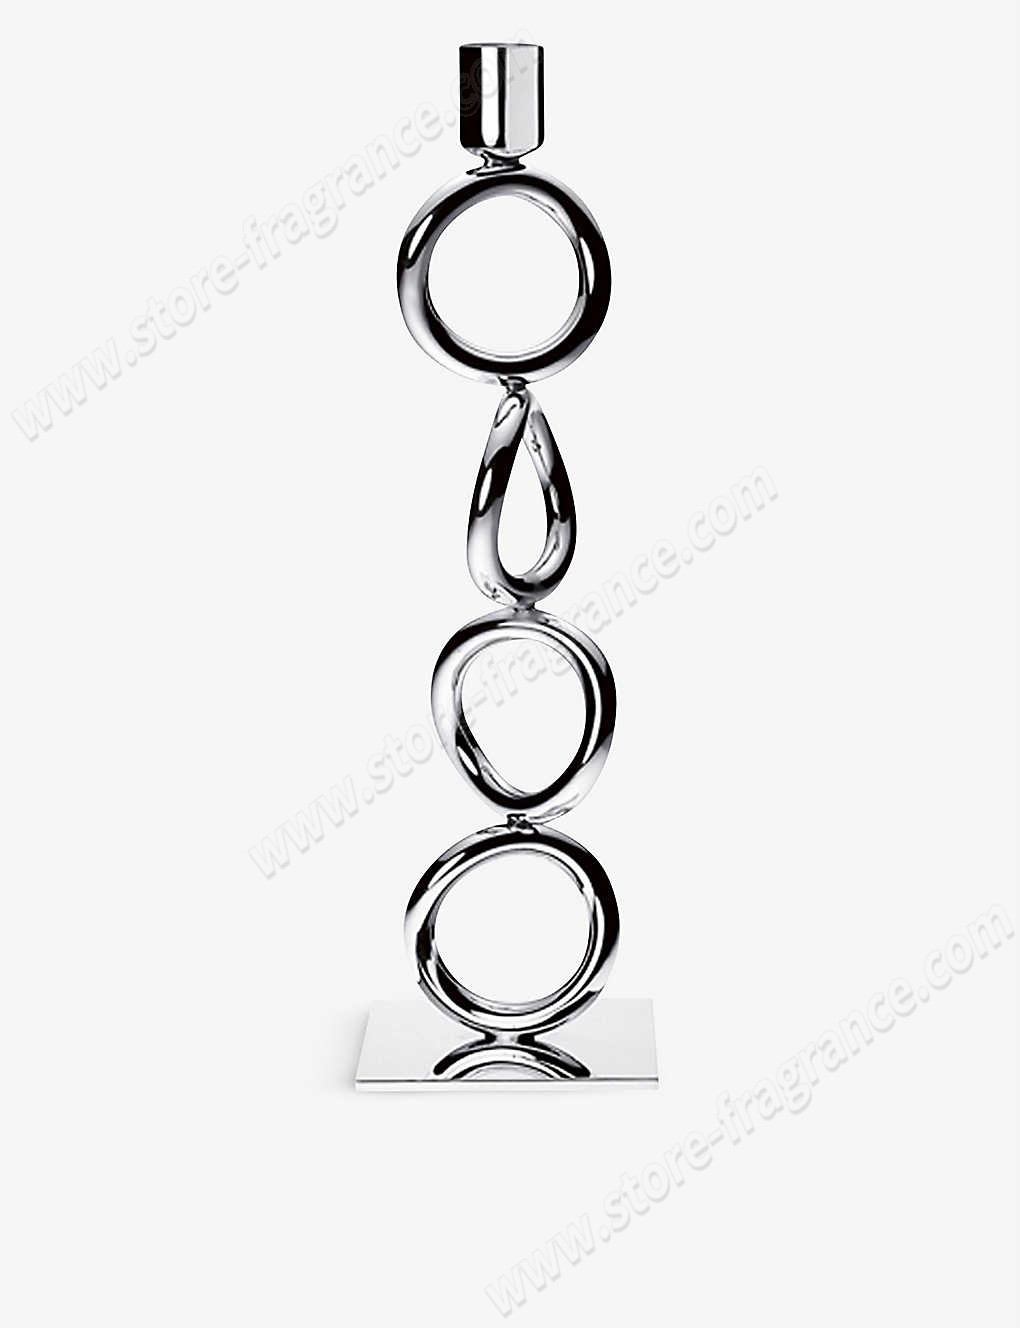 CHRISTOFLE/Vertigo four-ring silver-plated candlestick 30cm ✿ Discount Store - CHRISTOFLE/Vertigo four-ring silver-plated candlestick 30cm ✿ Discount Store